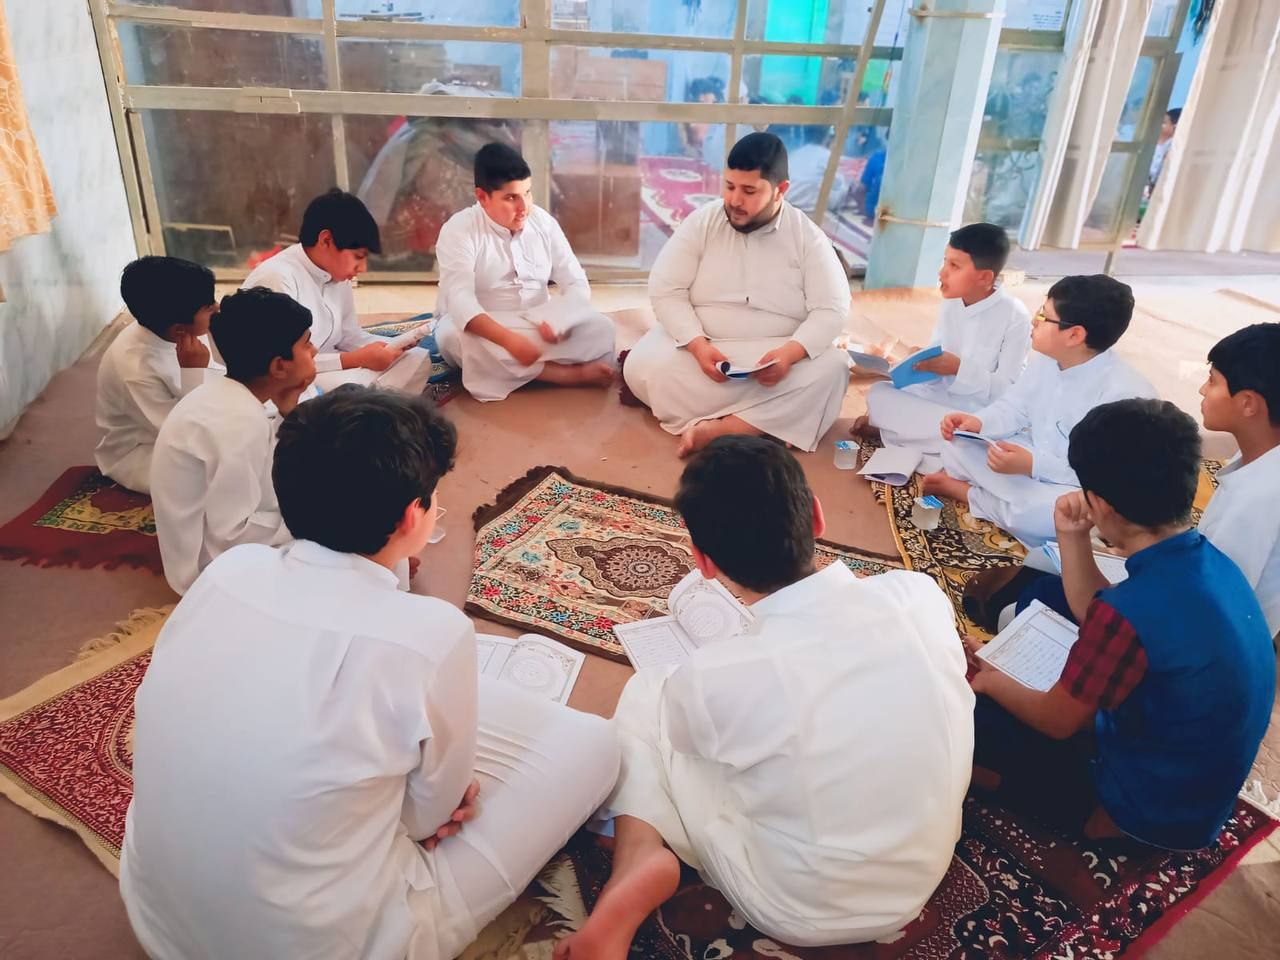 انطلاق الدورات القرآنية الصيفية في محافظة المثنى بمشاركة أكثر من 3000 طالب